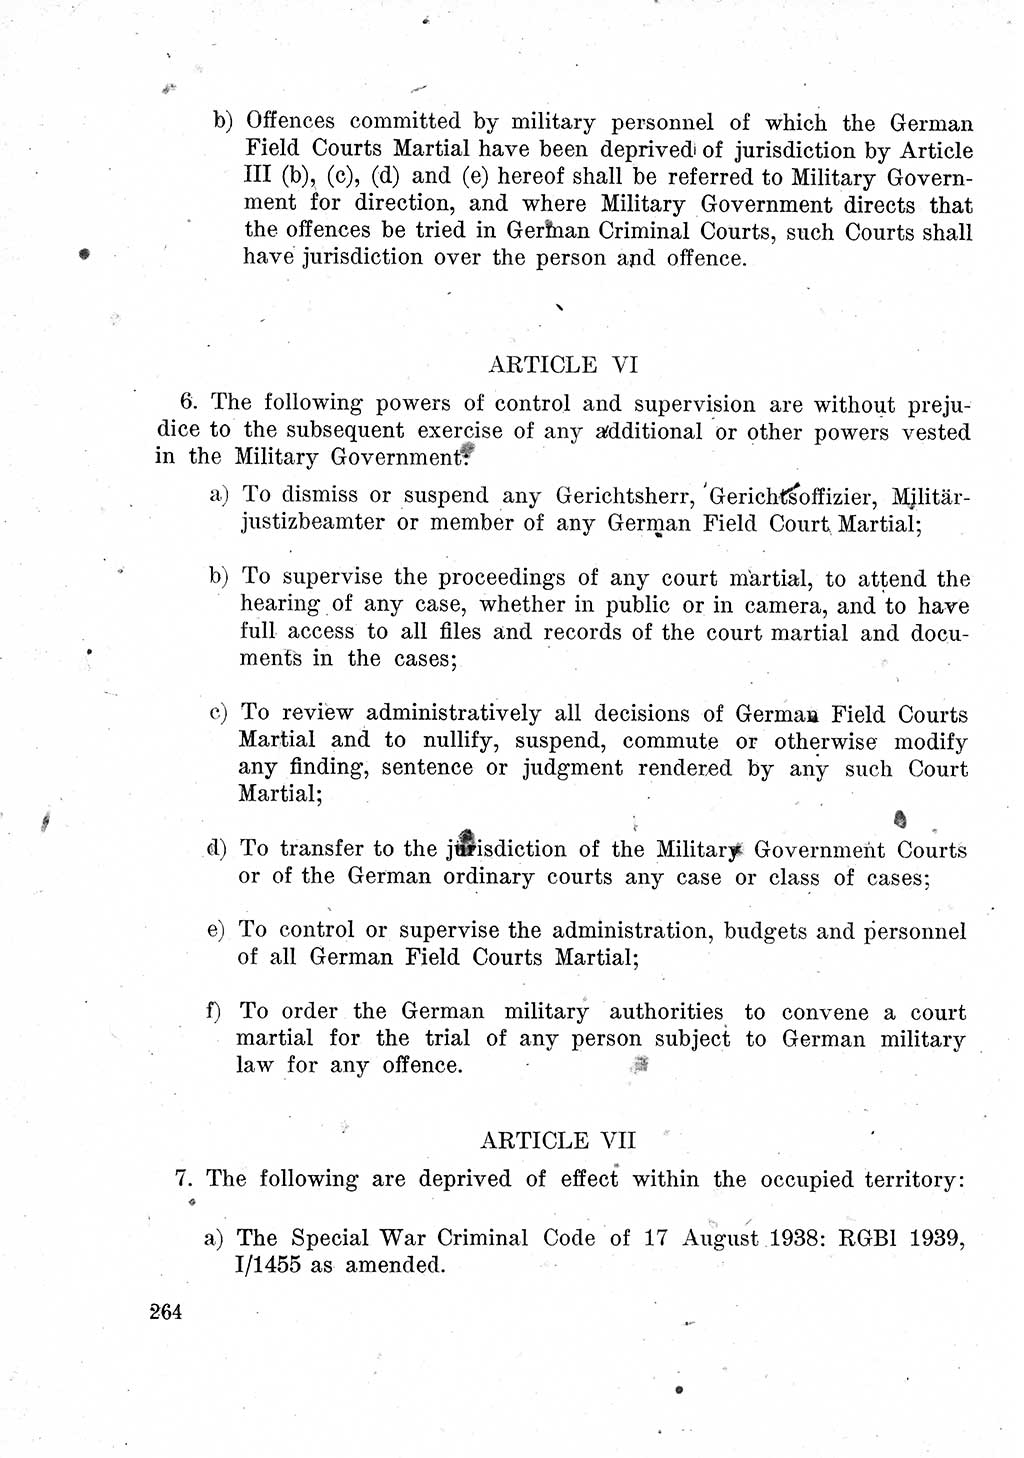 Das Recht der Besatzungsmacht (Deutschland), Proklamationen, Deklerationen, Verordnungen, Gesetze und Bekanntmachungen 1947, Seite 264 (R. Bes. Dtl. 1947, S. 264)